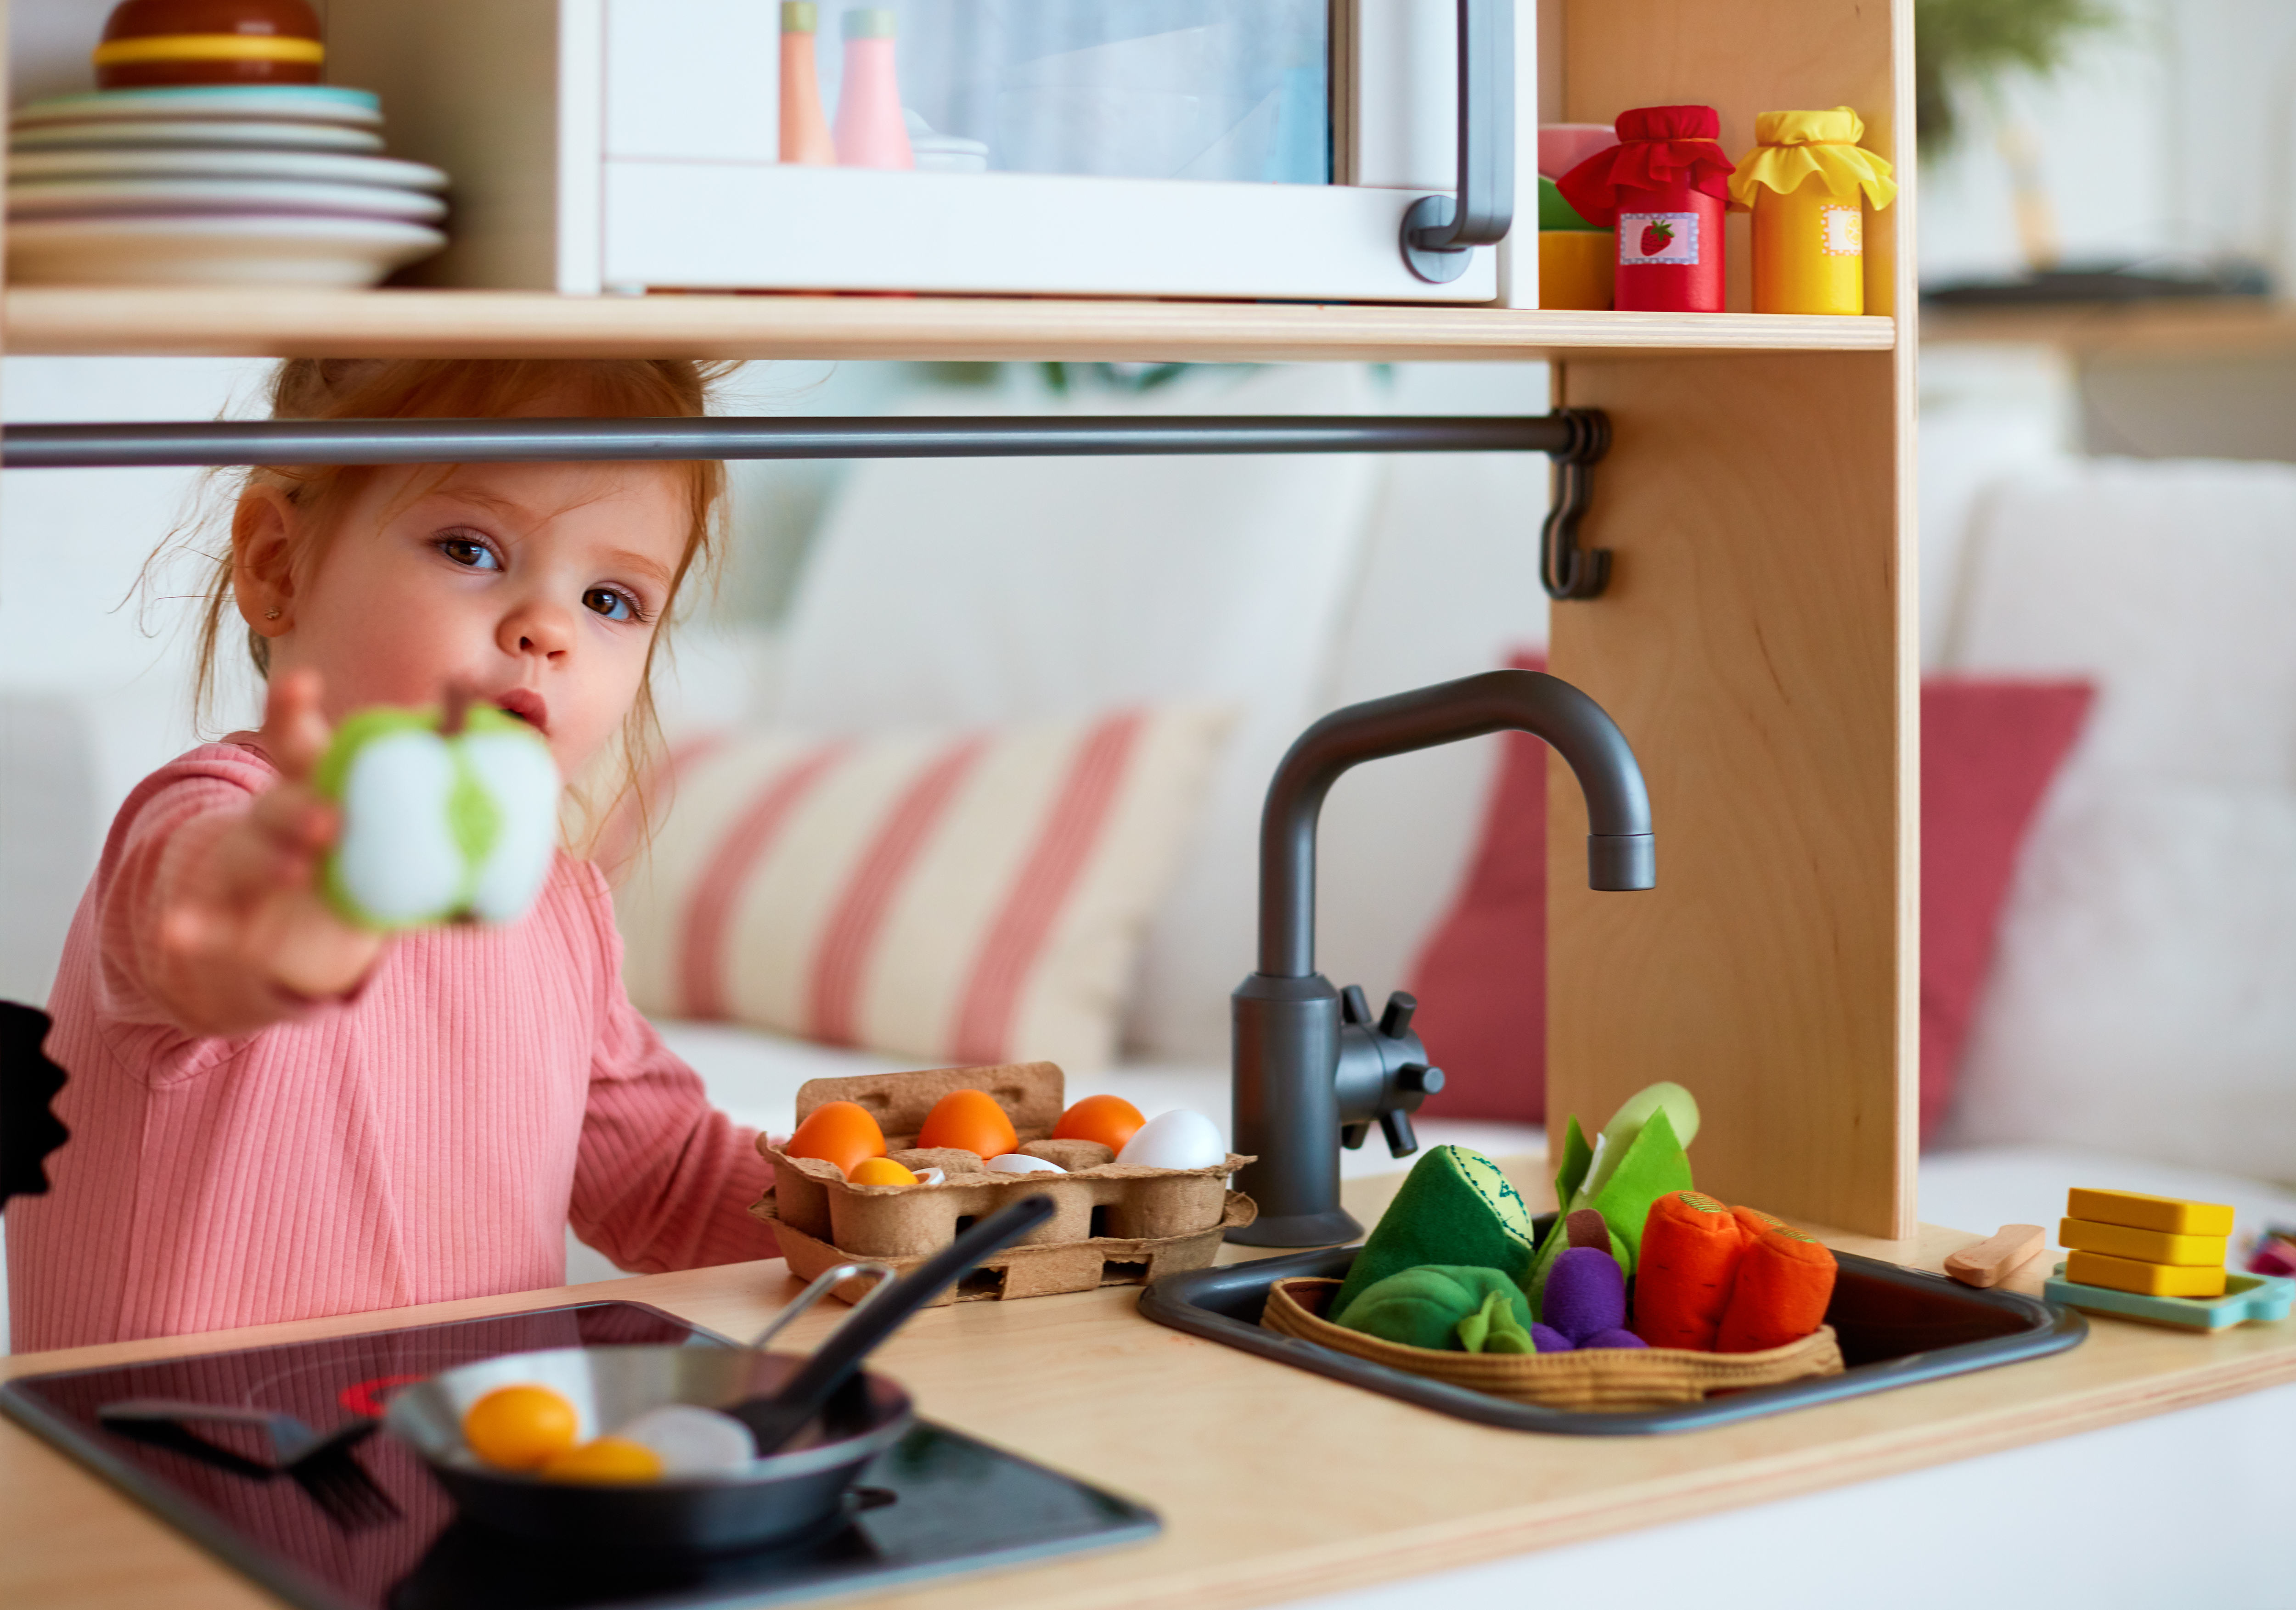 Un enfant tend une pomme en plastique dans une cuisine jouet | Source : Shutterstock